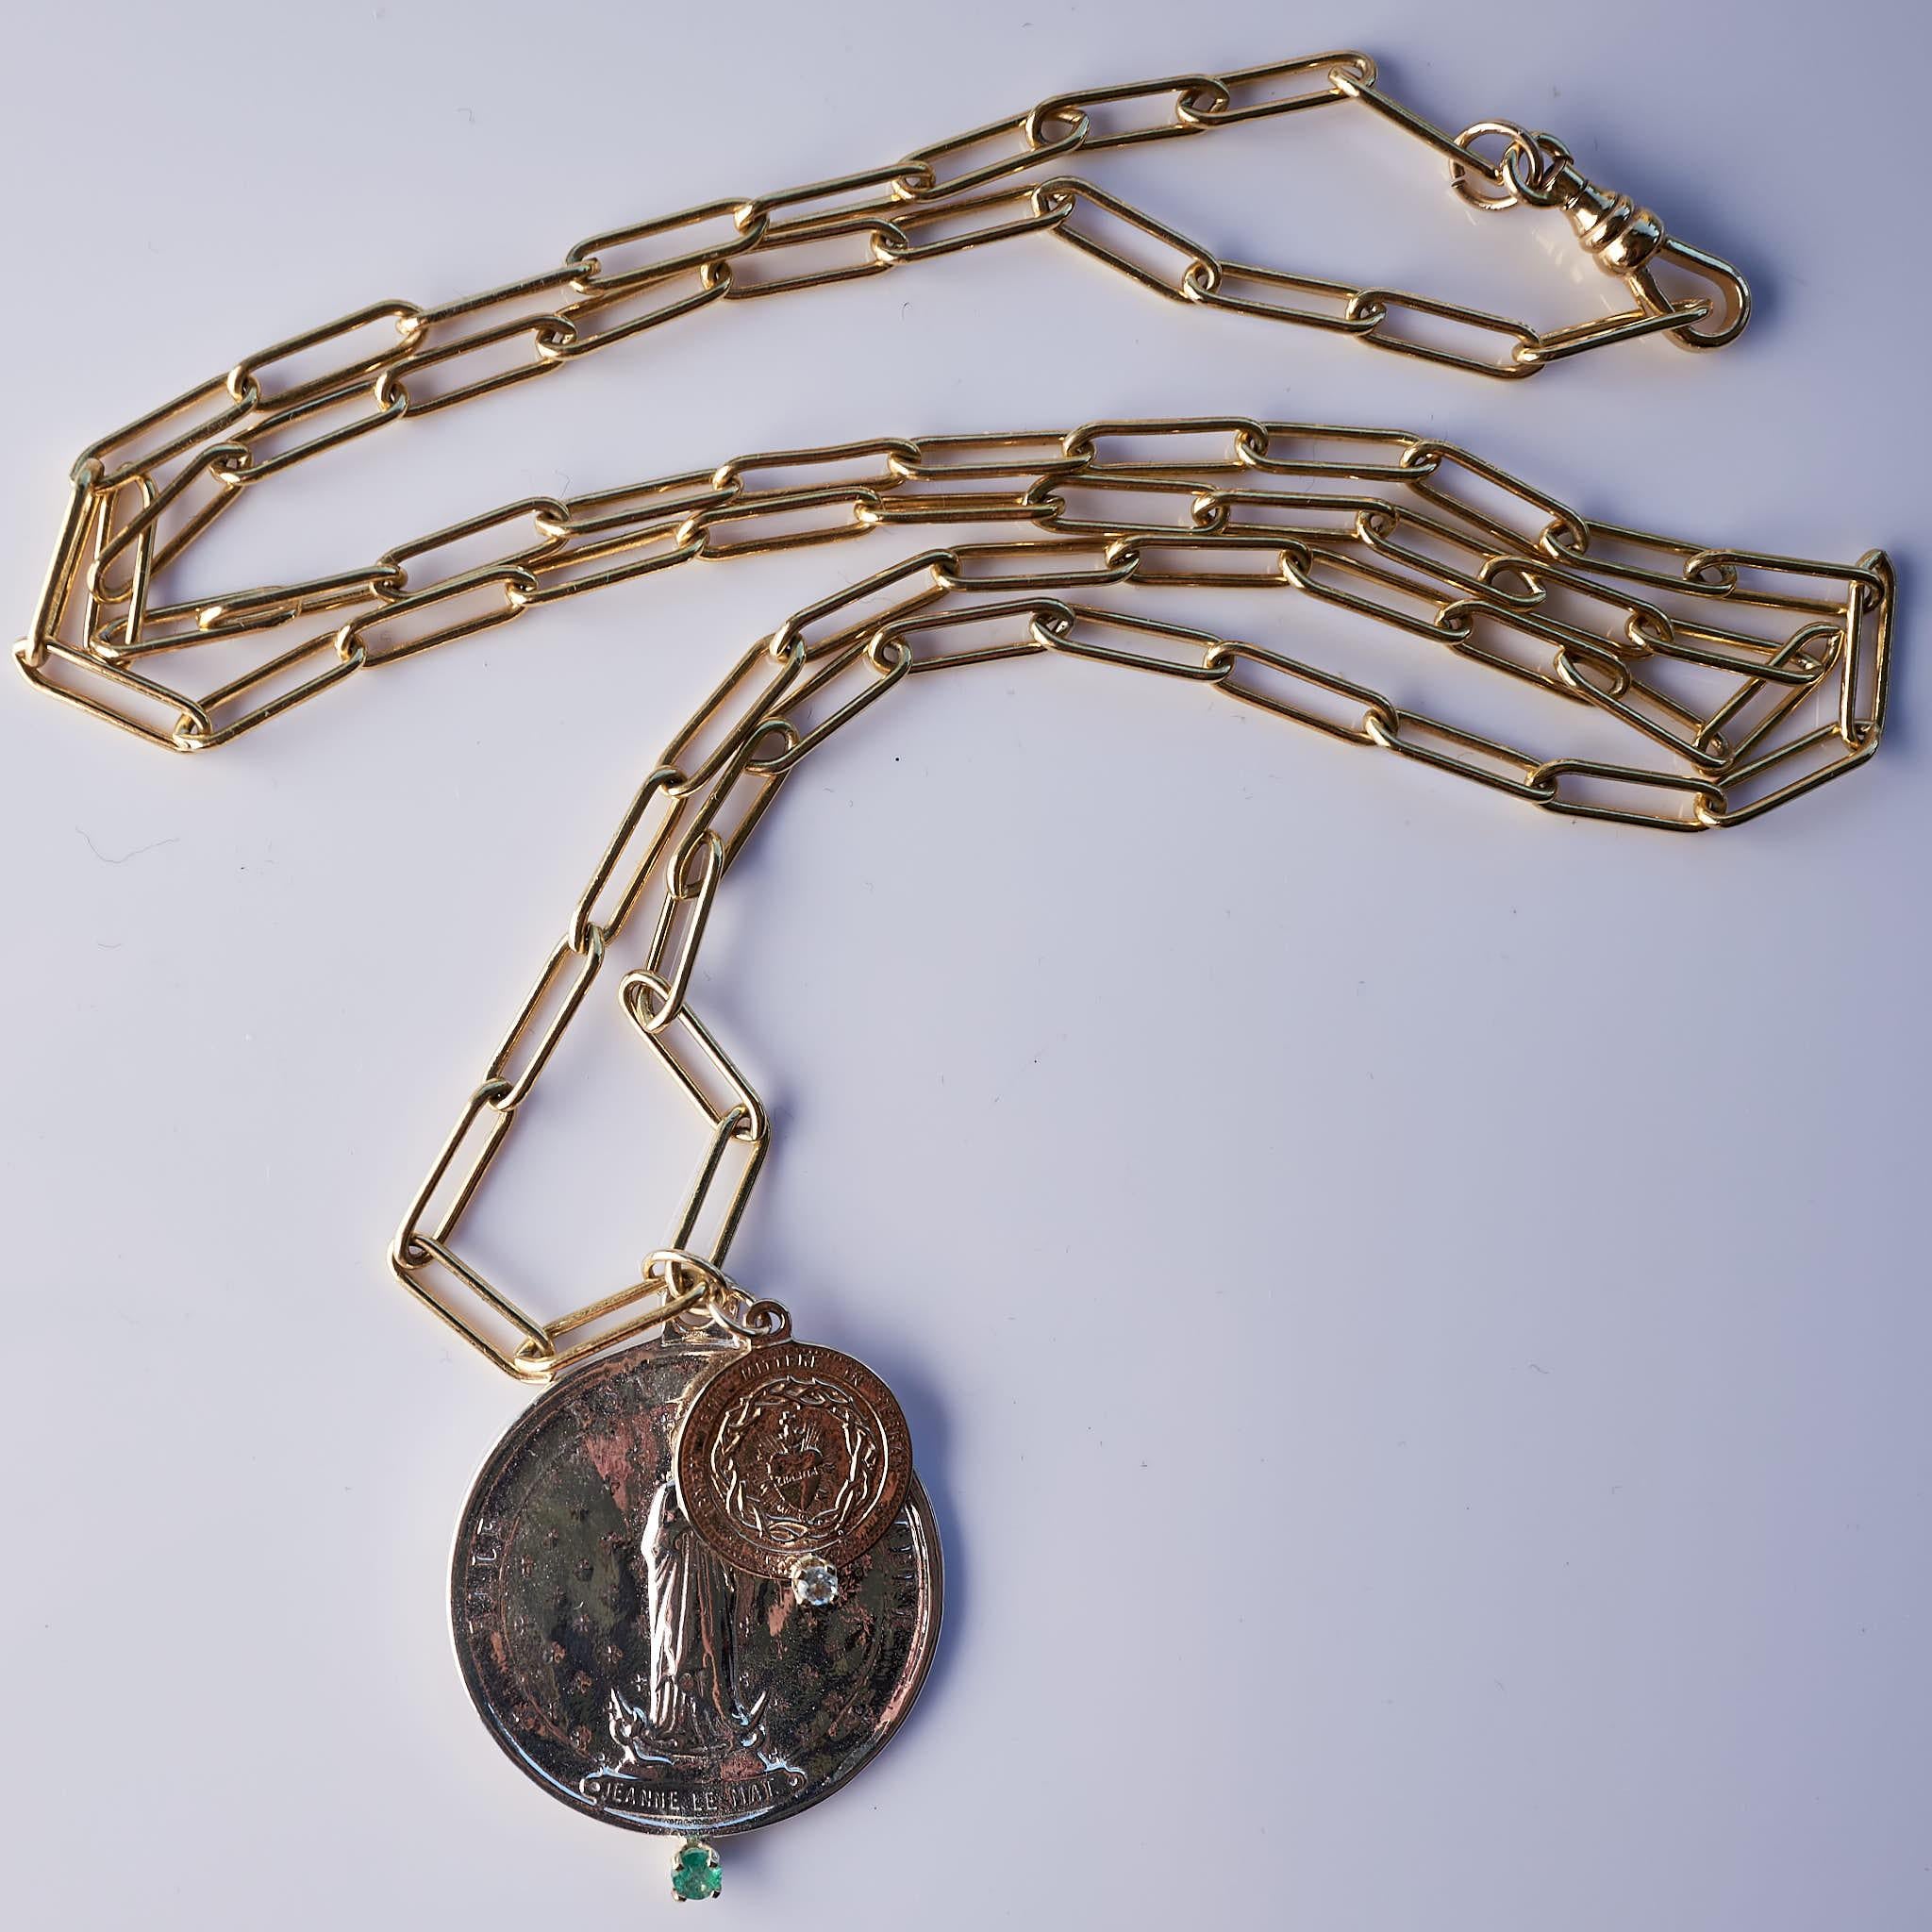 Smaragd und Aquamarin in Goldzacken auf einer Silber- und Bronzemedaille, eine Medaille ist aus Silber und stellt einen französischen Heiligen dar, die andere Medaille ist ein heiliges Herz aus Bronze mit Aquamarin. Die Chunky Chain ist eine Gold